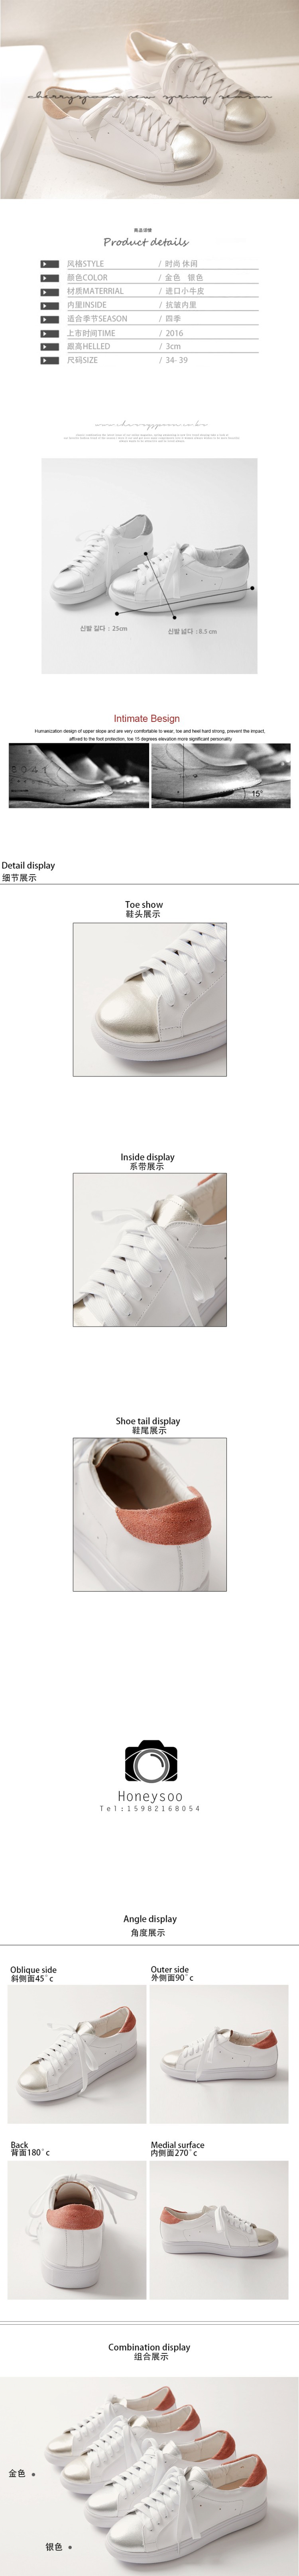 16韩版新款真皮小白鞋女鞋女运动鞋系带松糕跟鞋_desc